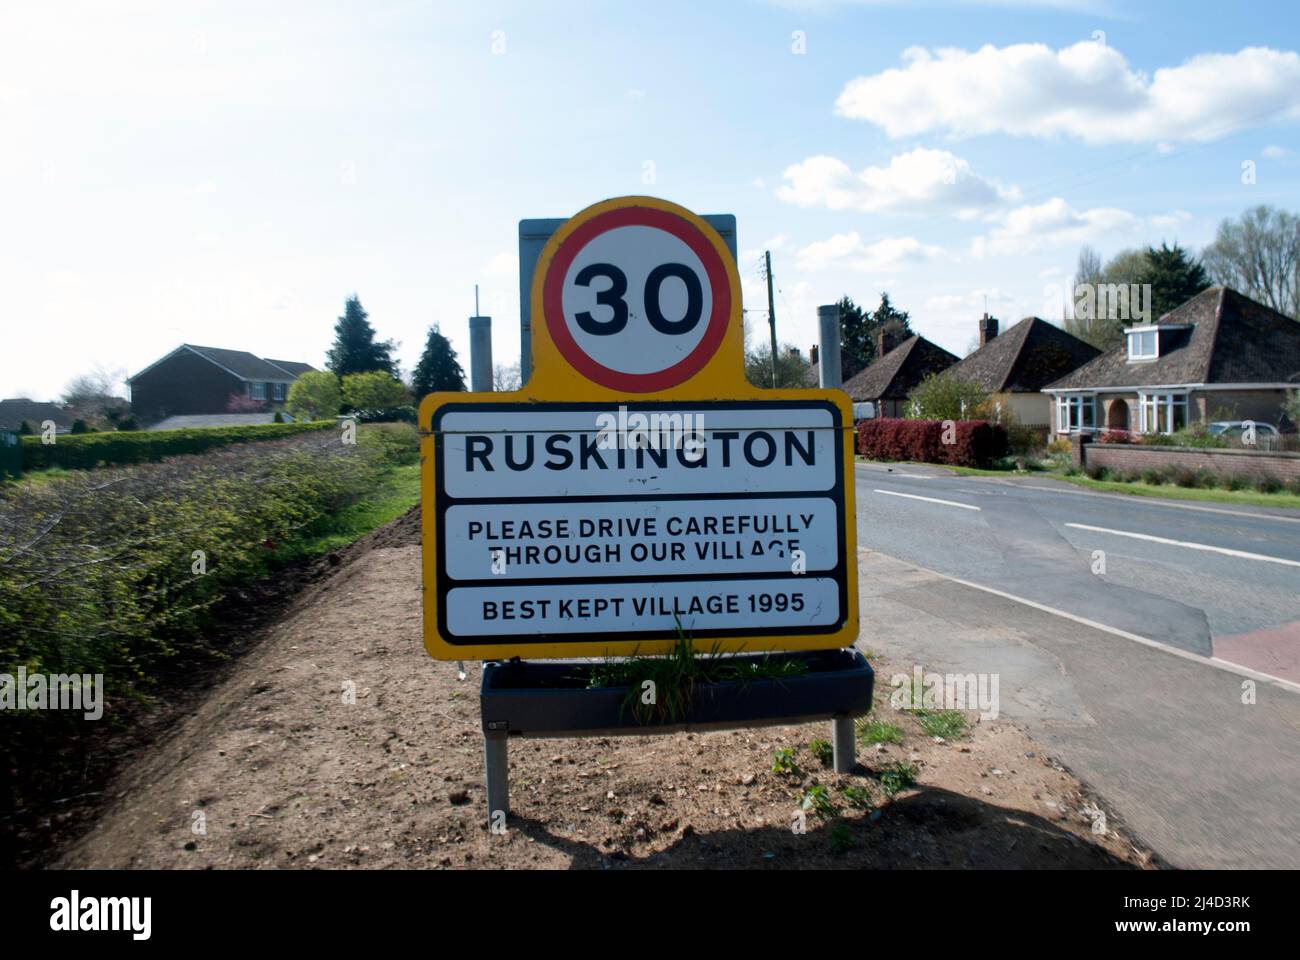 Cartel del nombre del pueblo para Ruskington y límite de velocidad de 30 mph al lado de la carretera que conduce a Ruskington, Sleaford, Lincolnshire, Inglaterra, Reino Unido Foto de stock